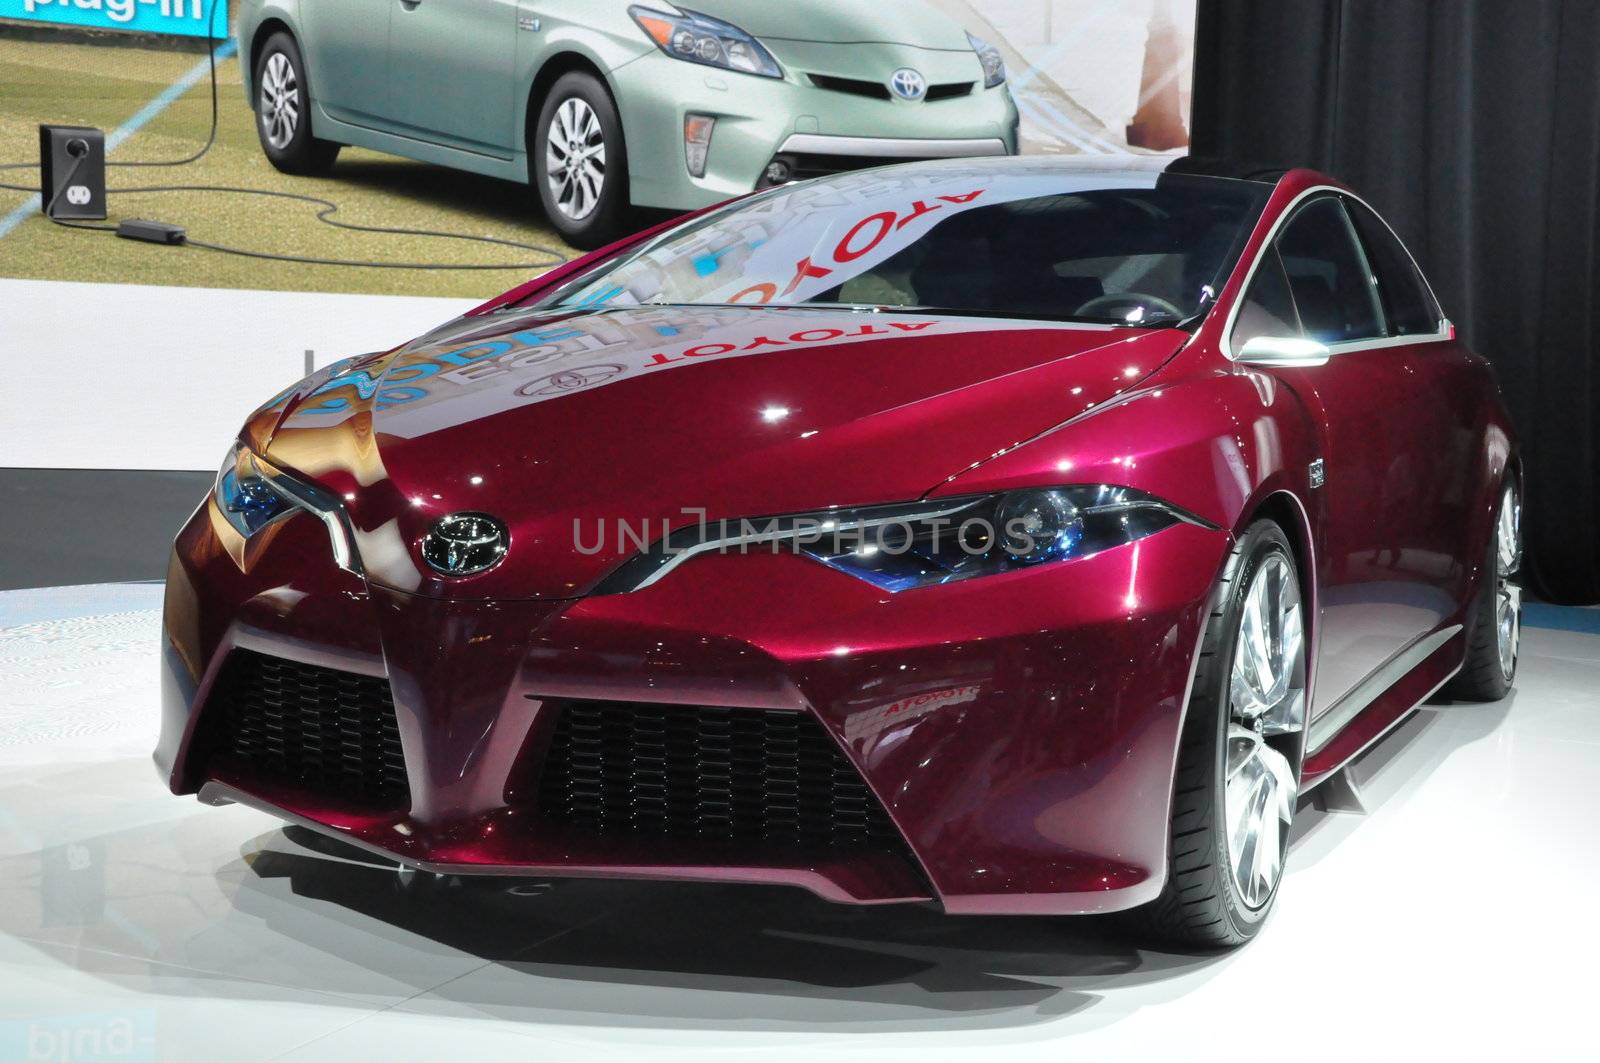 Toyota NS4 Concept Car by sainaniritu